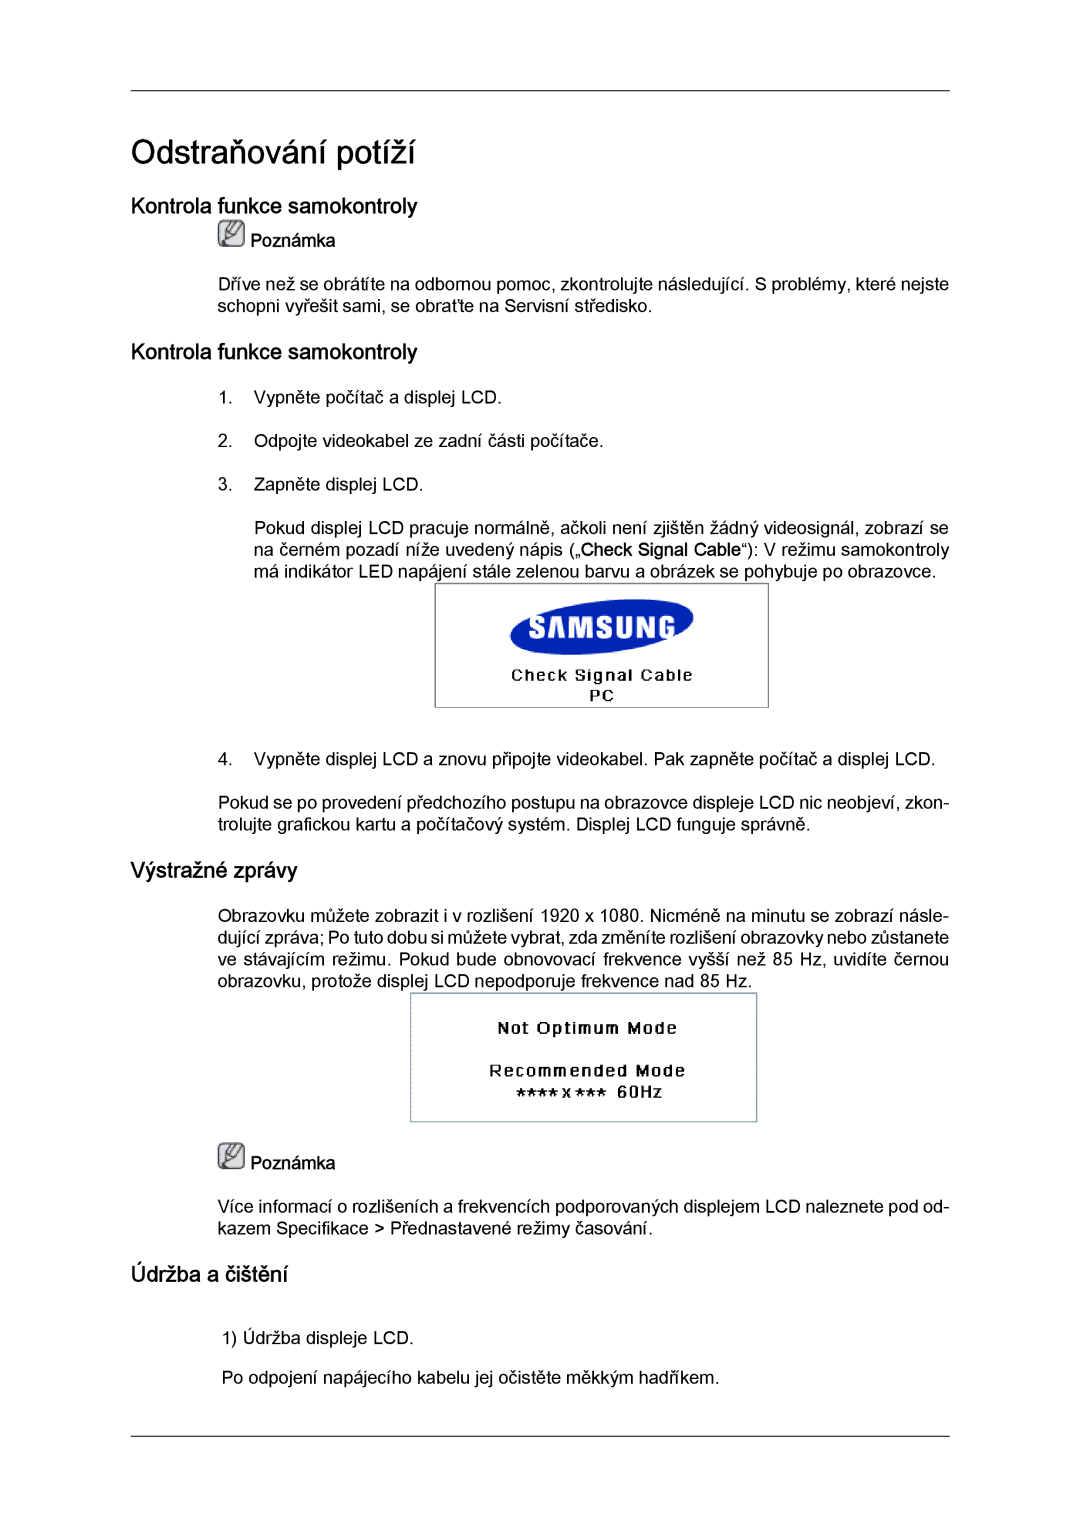 Samsung LH52BPTLBC/EN, LH52BPPLBC/EN manual Kontrola funkce samokontroly, Výstražné zprávy, Údržba a čištění 